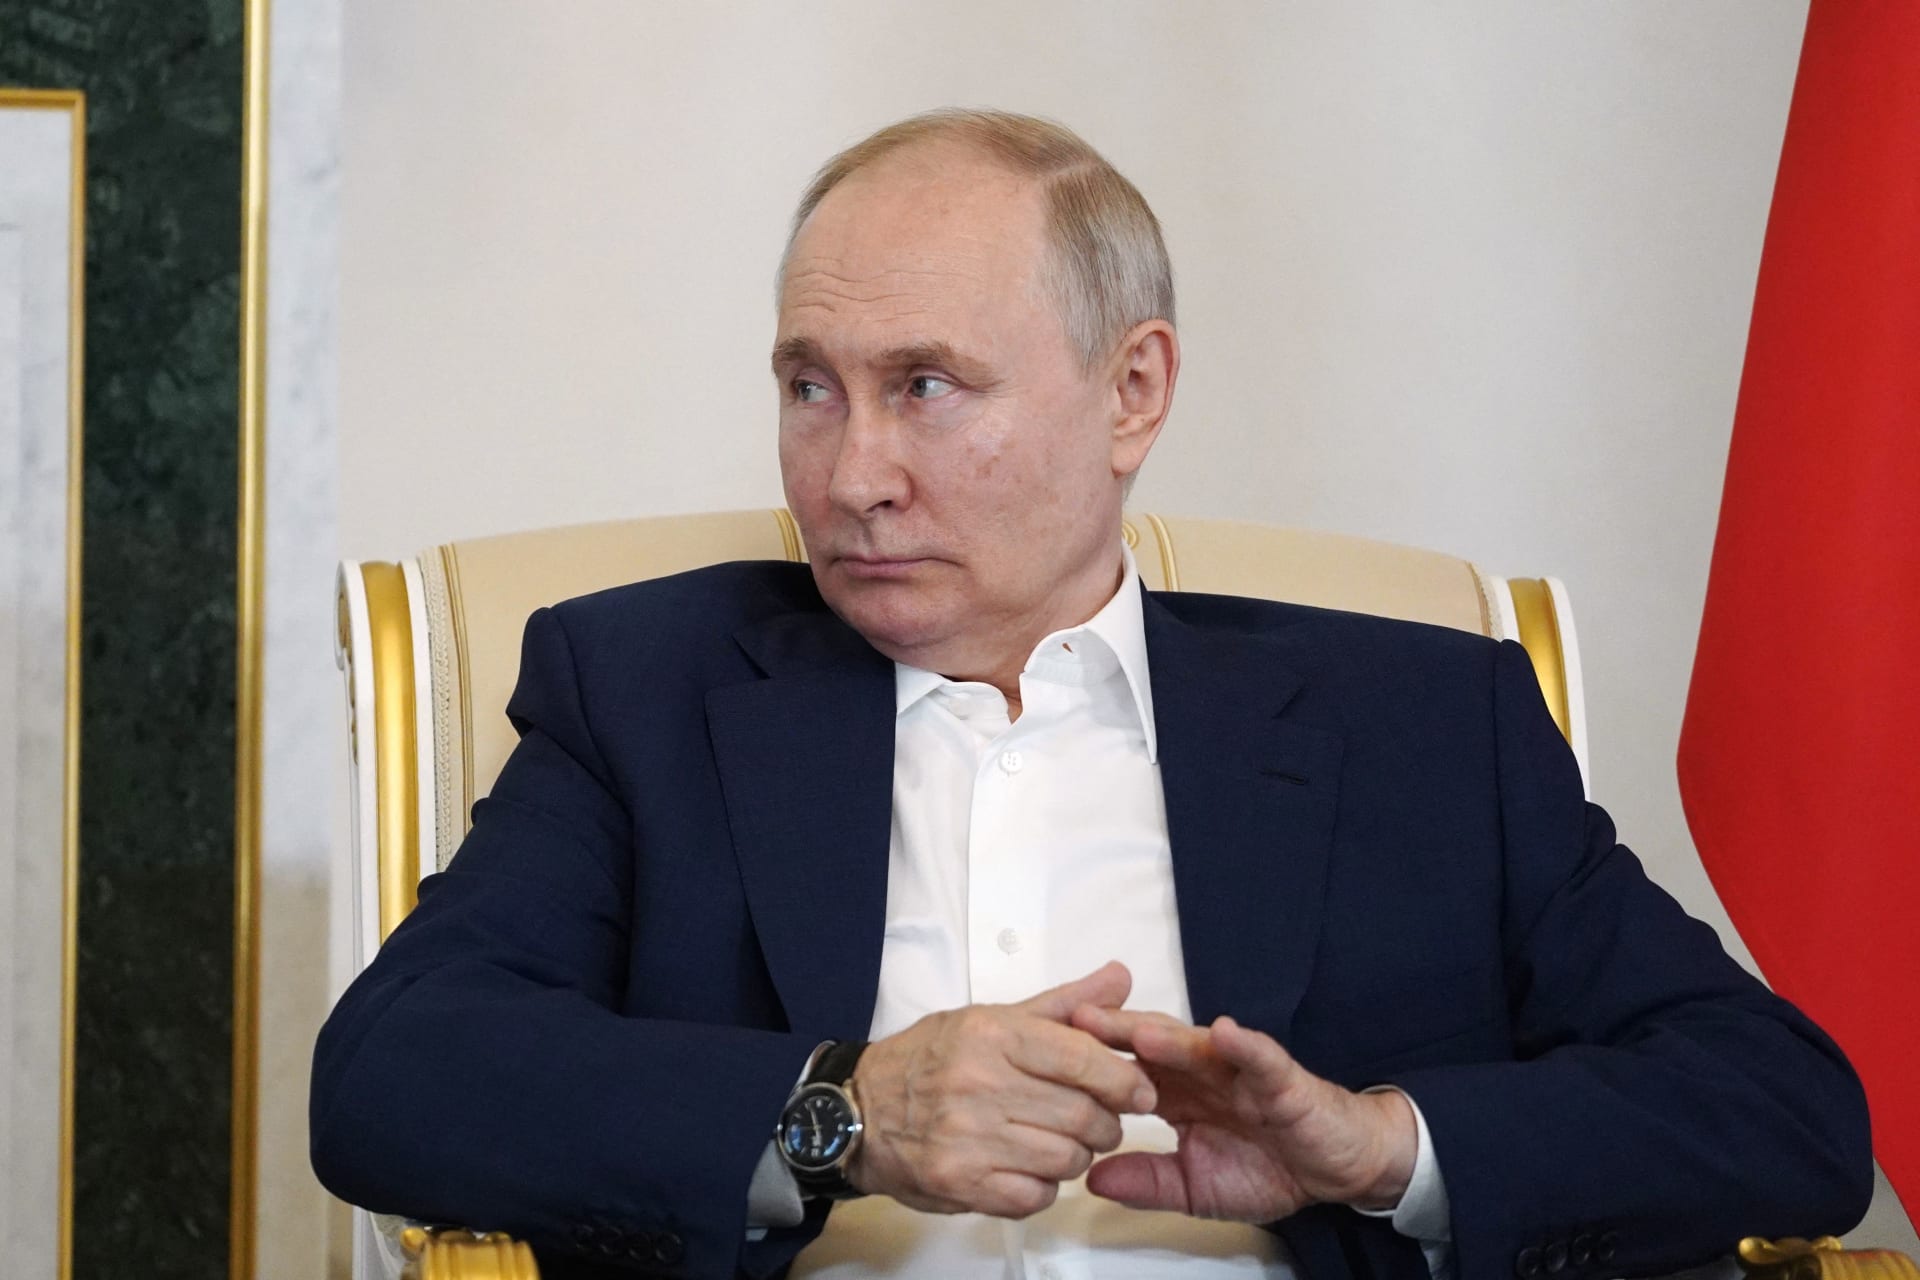 بوتين في القمة الإفريقية الروسية: ستصبح إفريقيا شريكًا رئيسيًا في "عالم جديد متعدد الأقطاب"